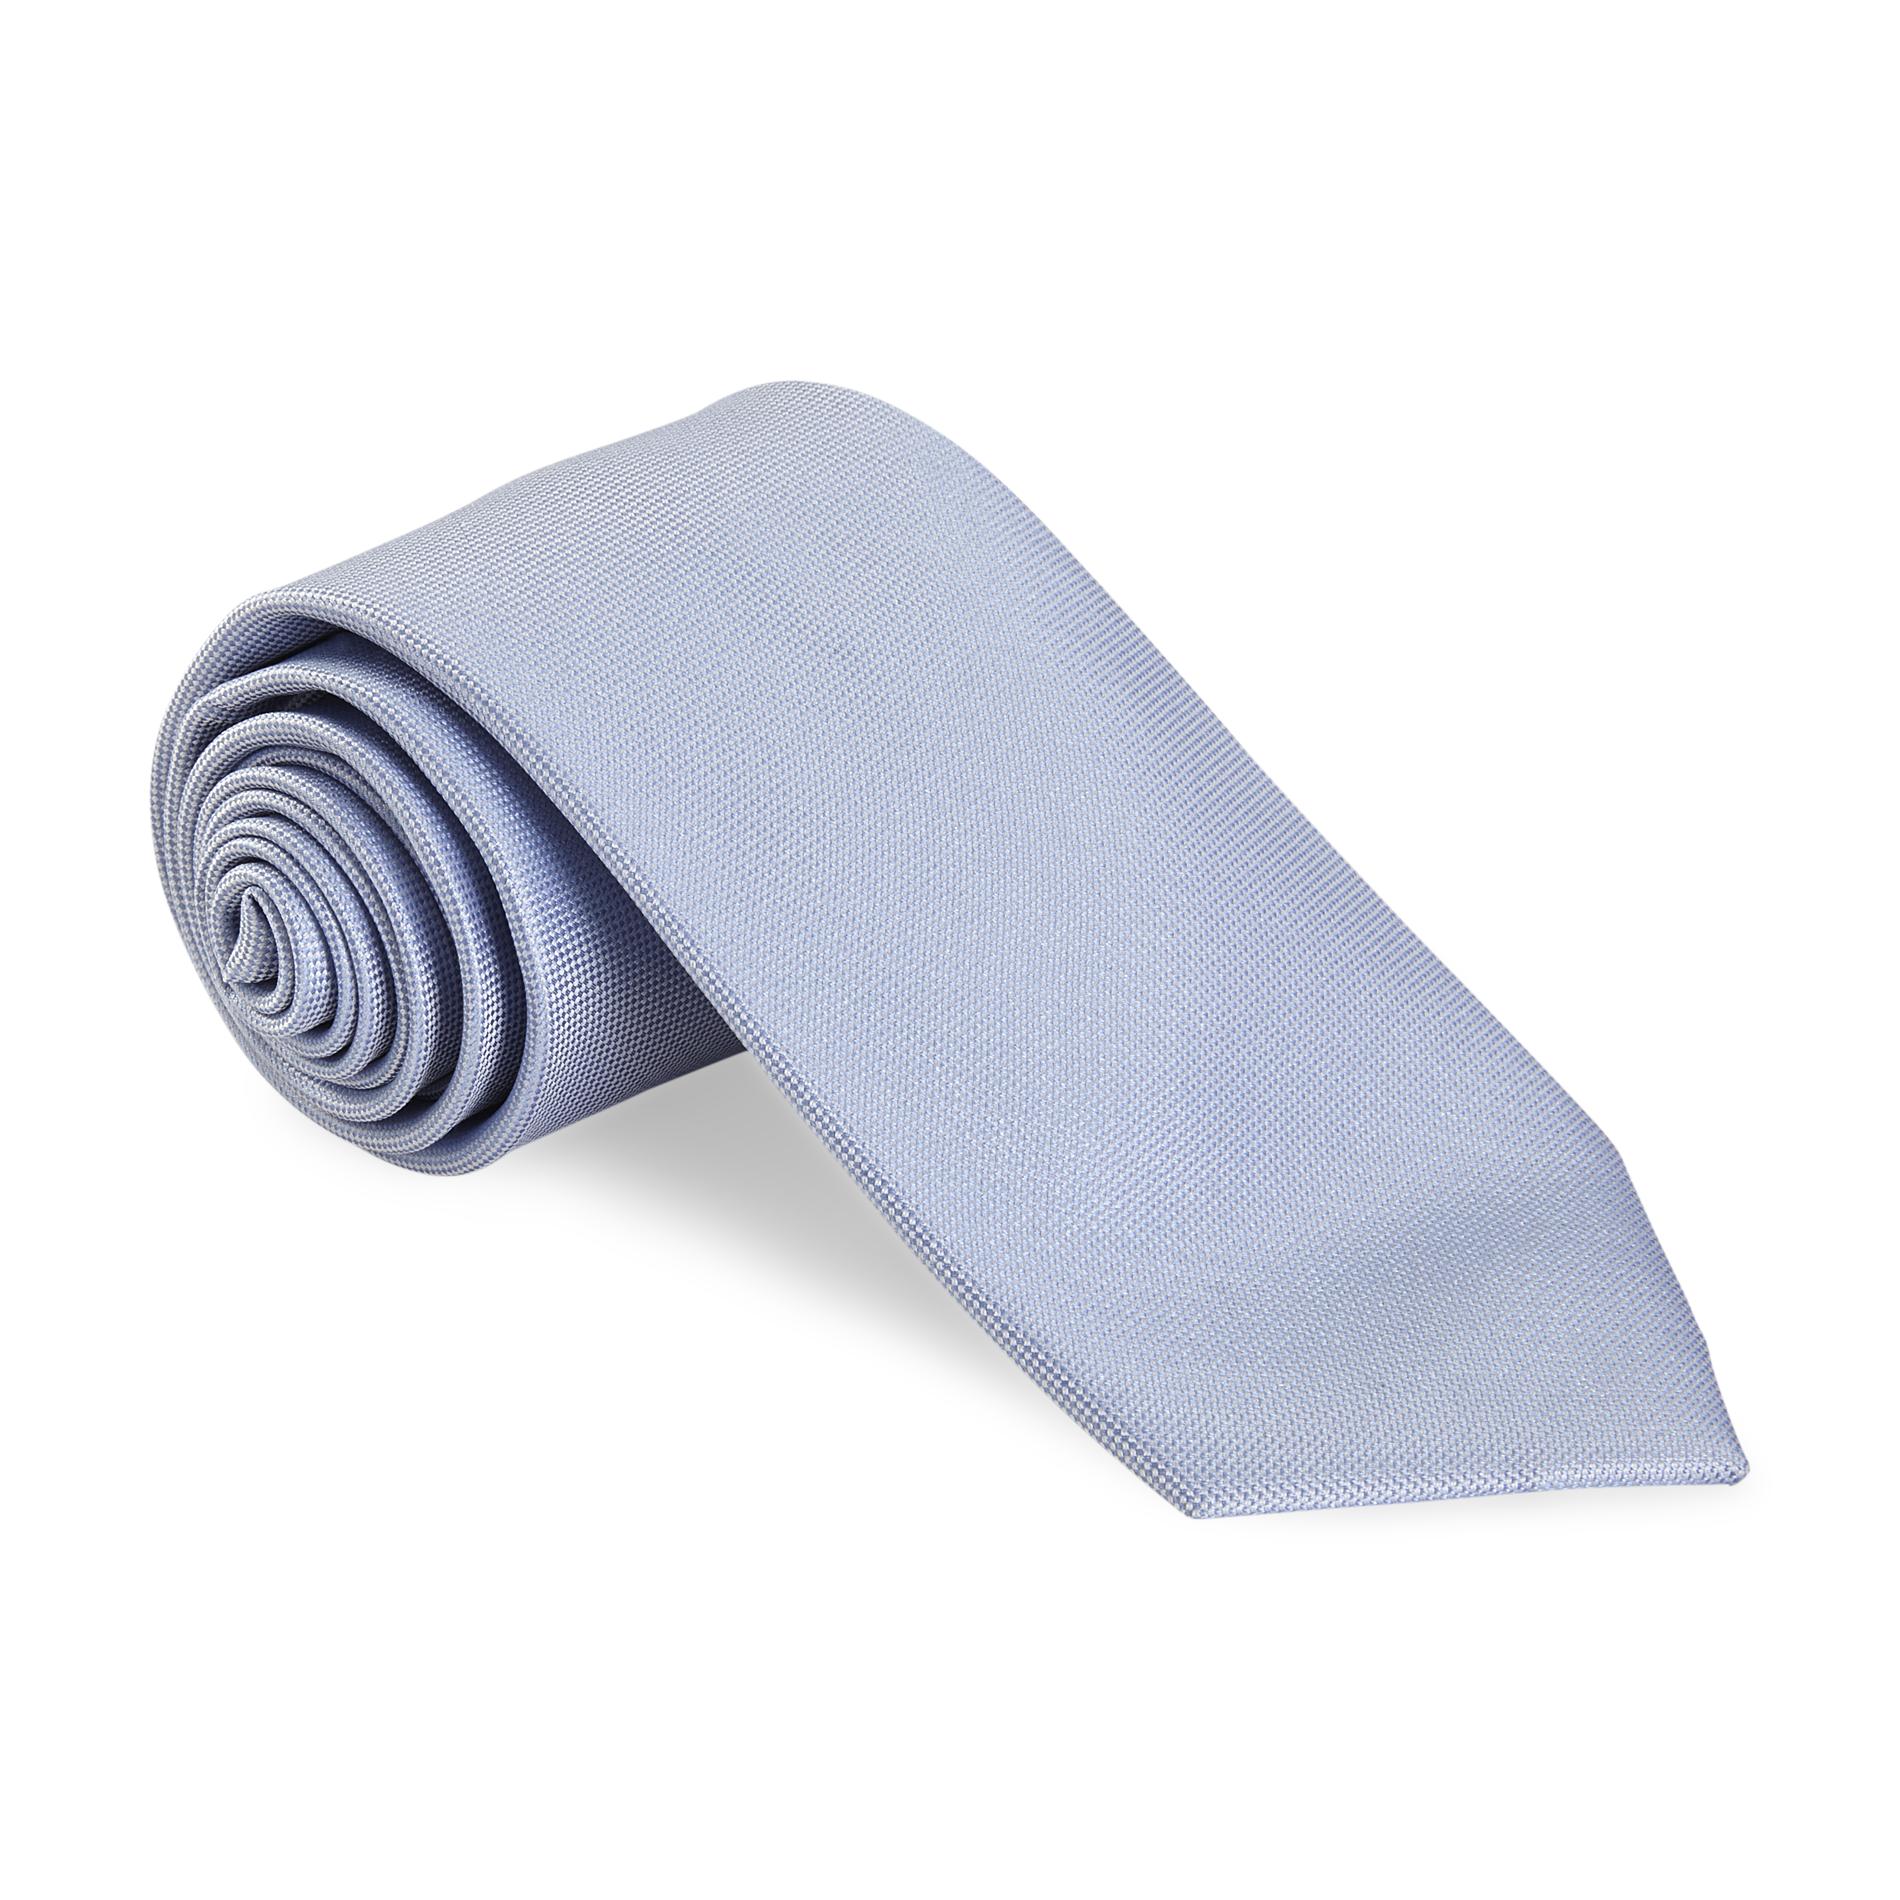 U.S. Polo Assn. Men's Silk Necktie - Pincheck